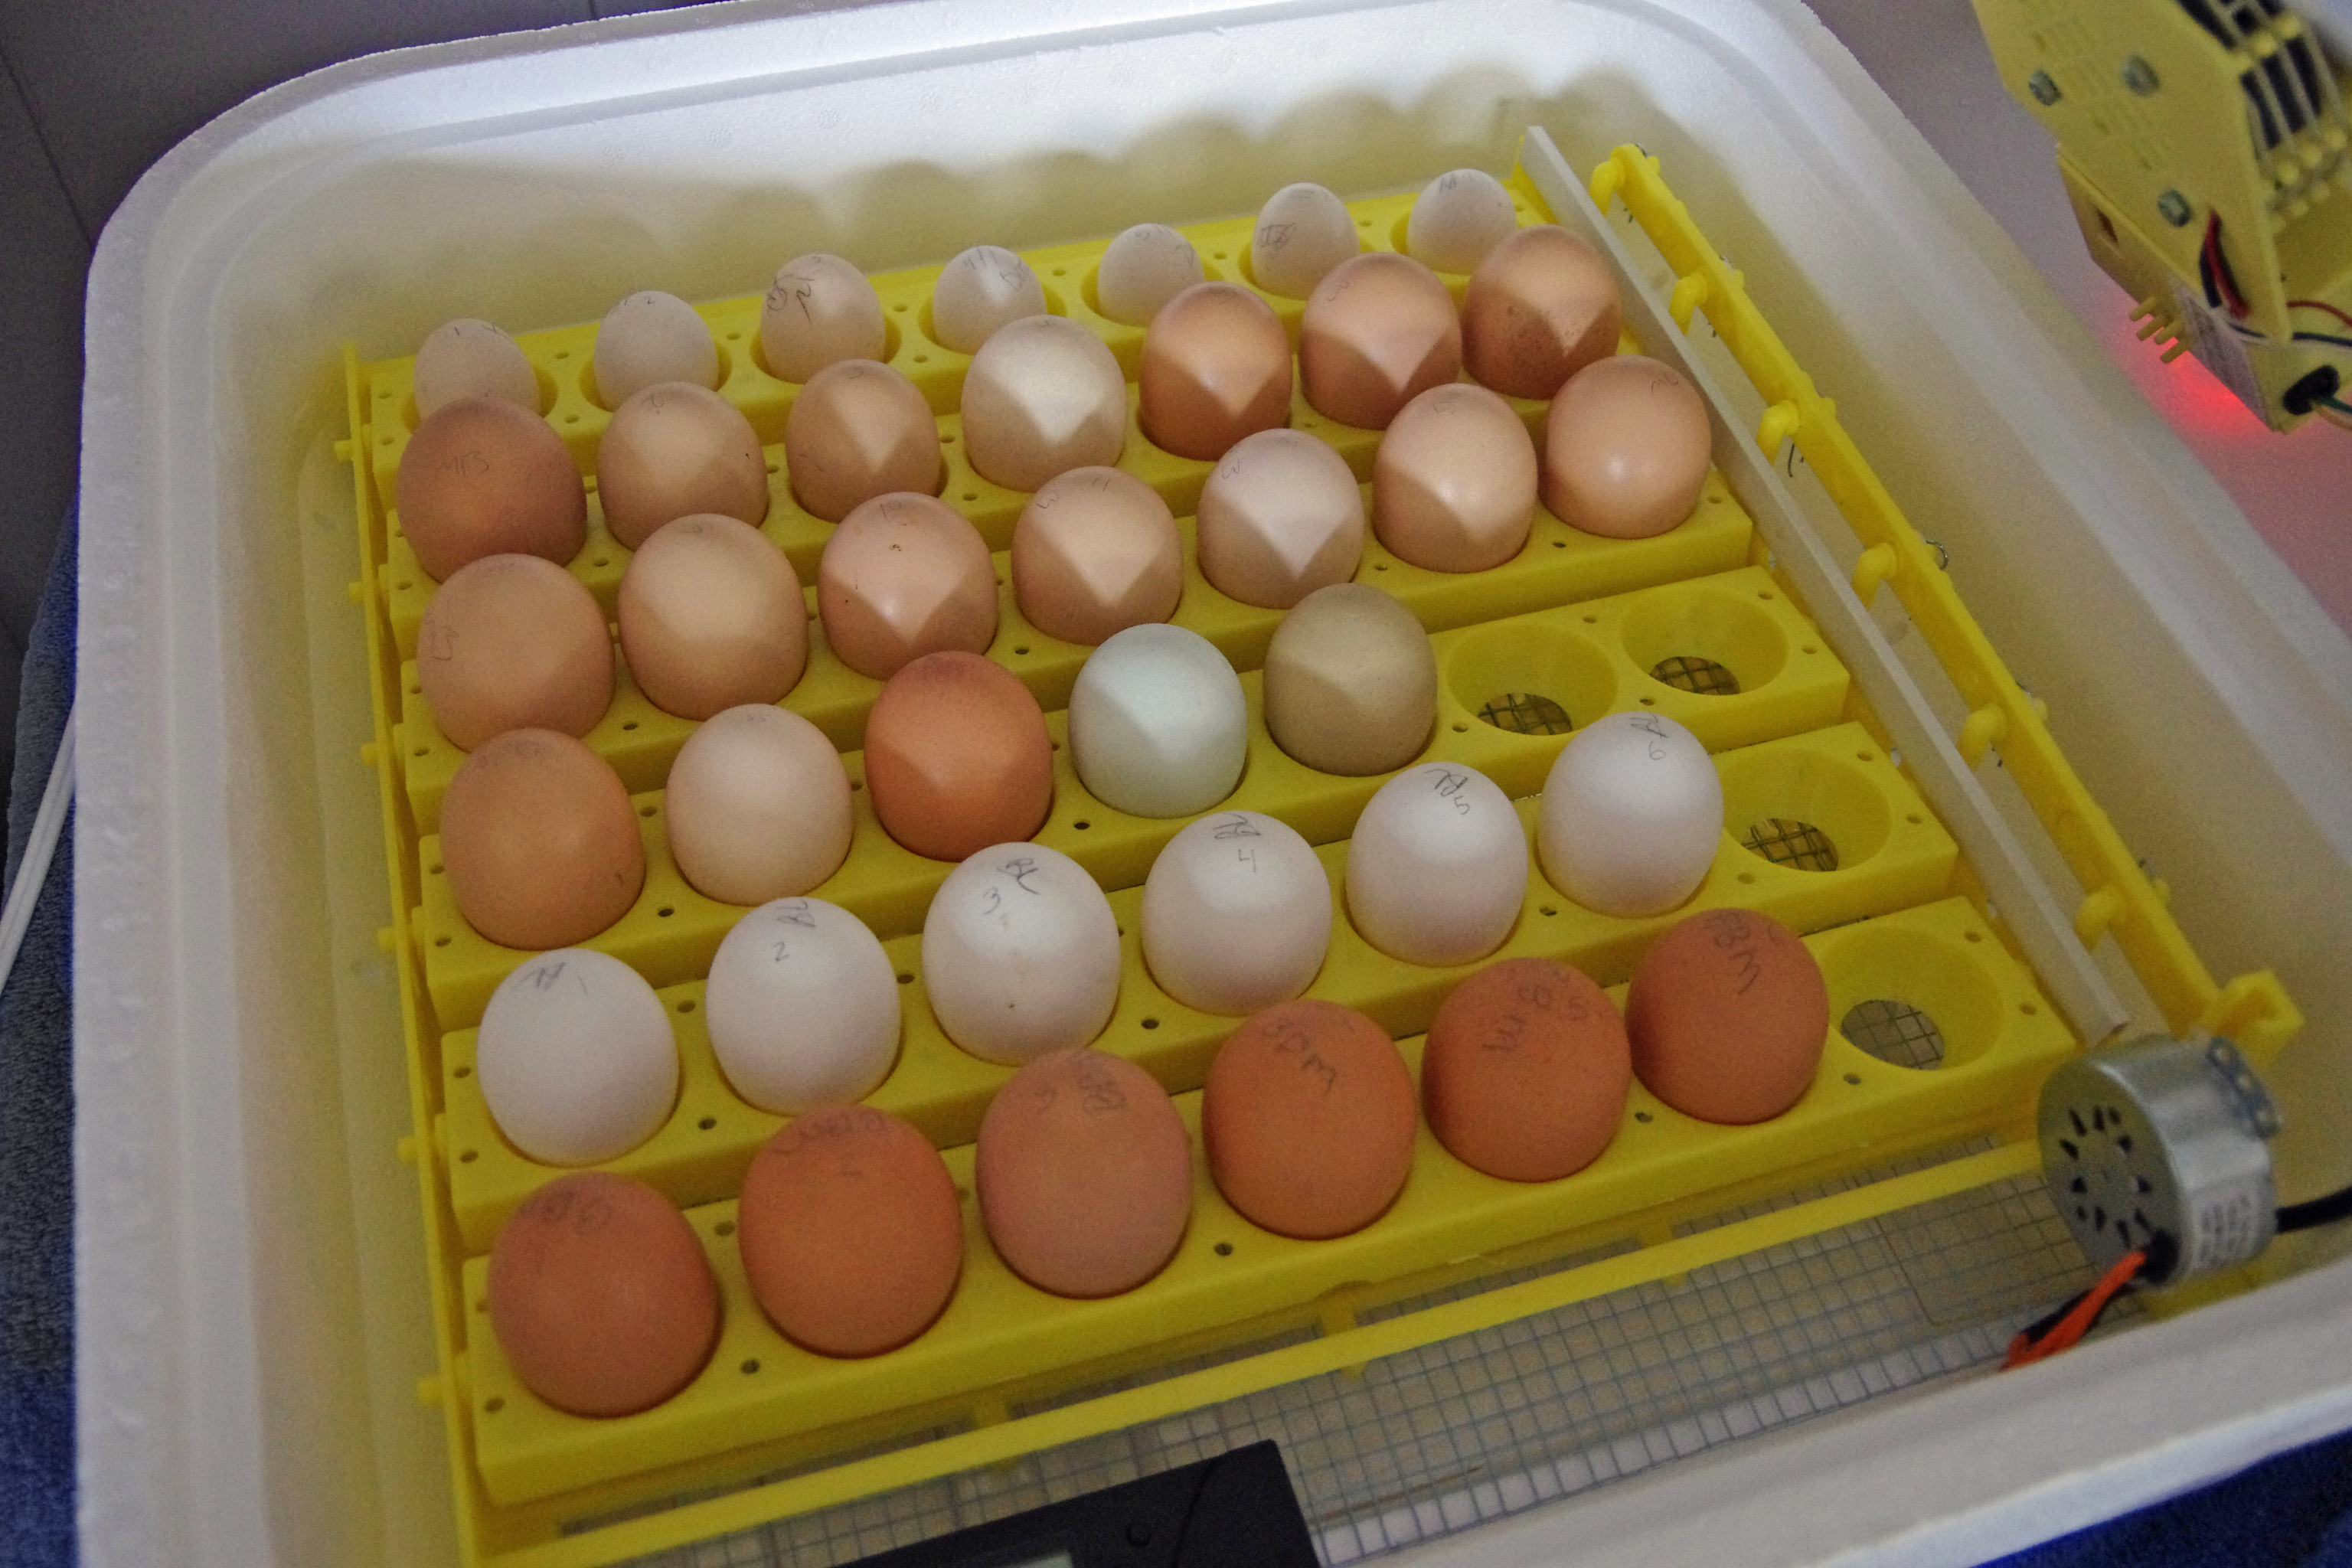 Сколько дней собирают яйца для инкубатора куриные. Инкубатор Несушка на 24 яйца. Инкубатор Несушка на 90 яиц. Инкубация гусиных яиц в инкубаторе Несушка. Куриные яйца в инкубаторе.